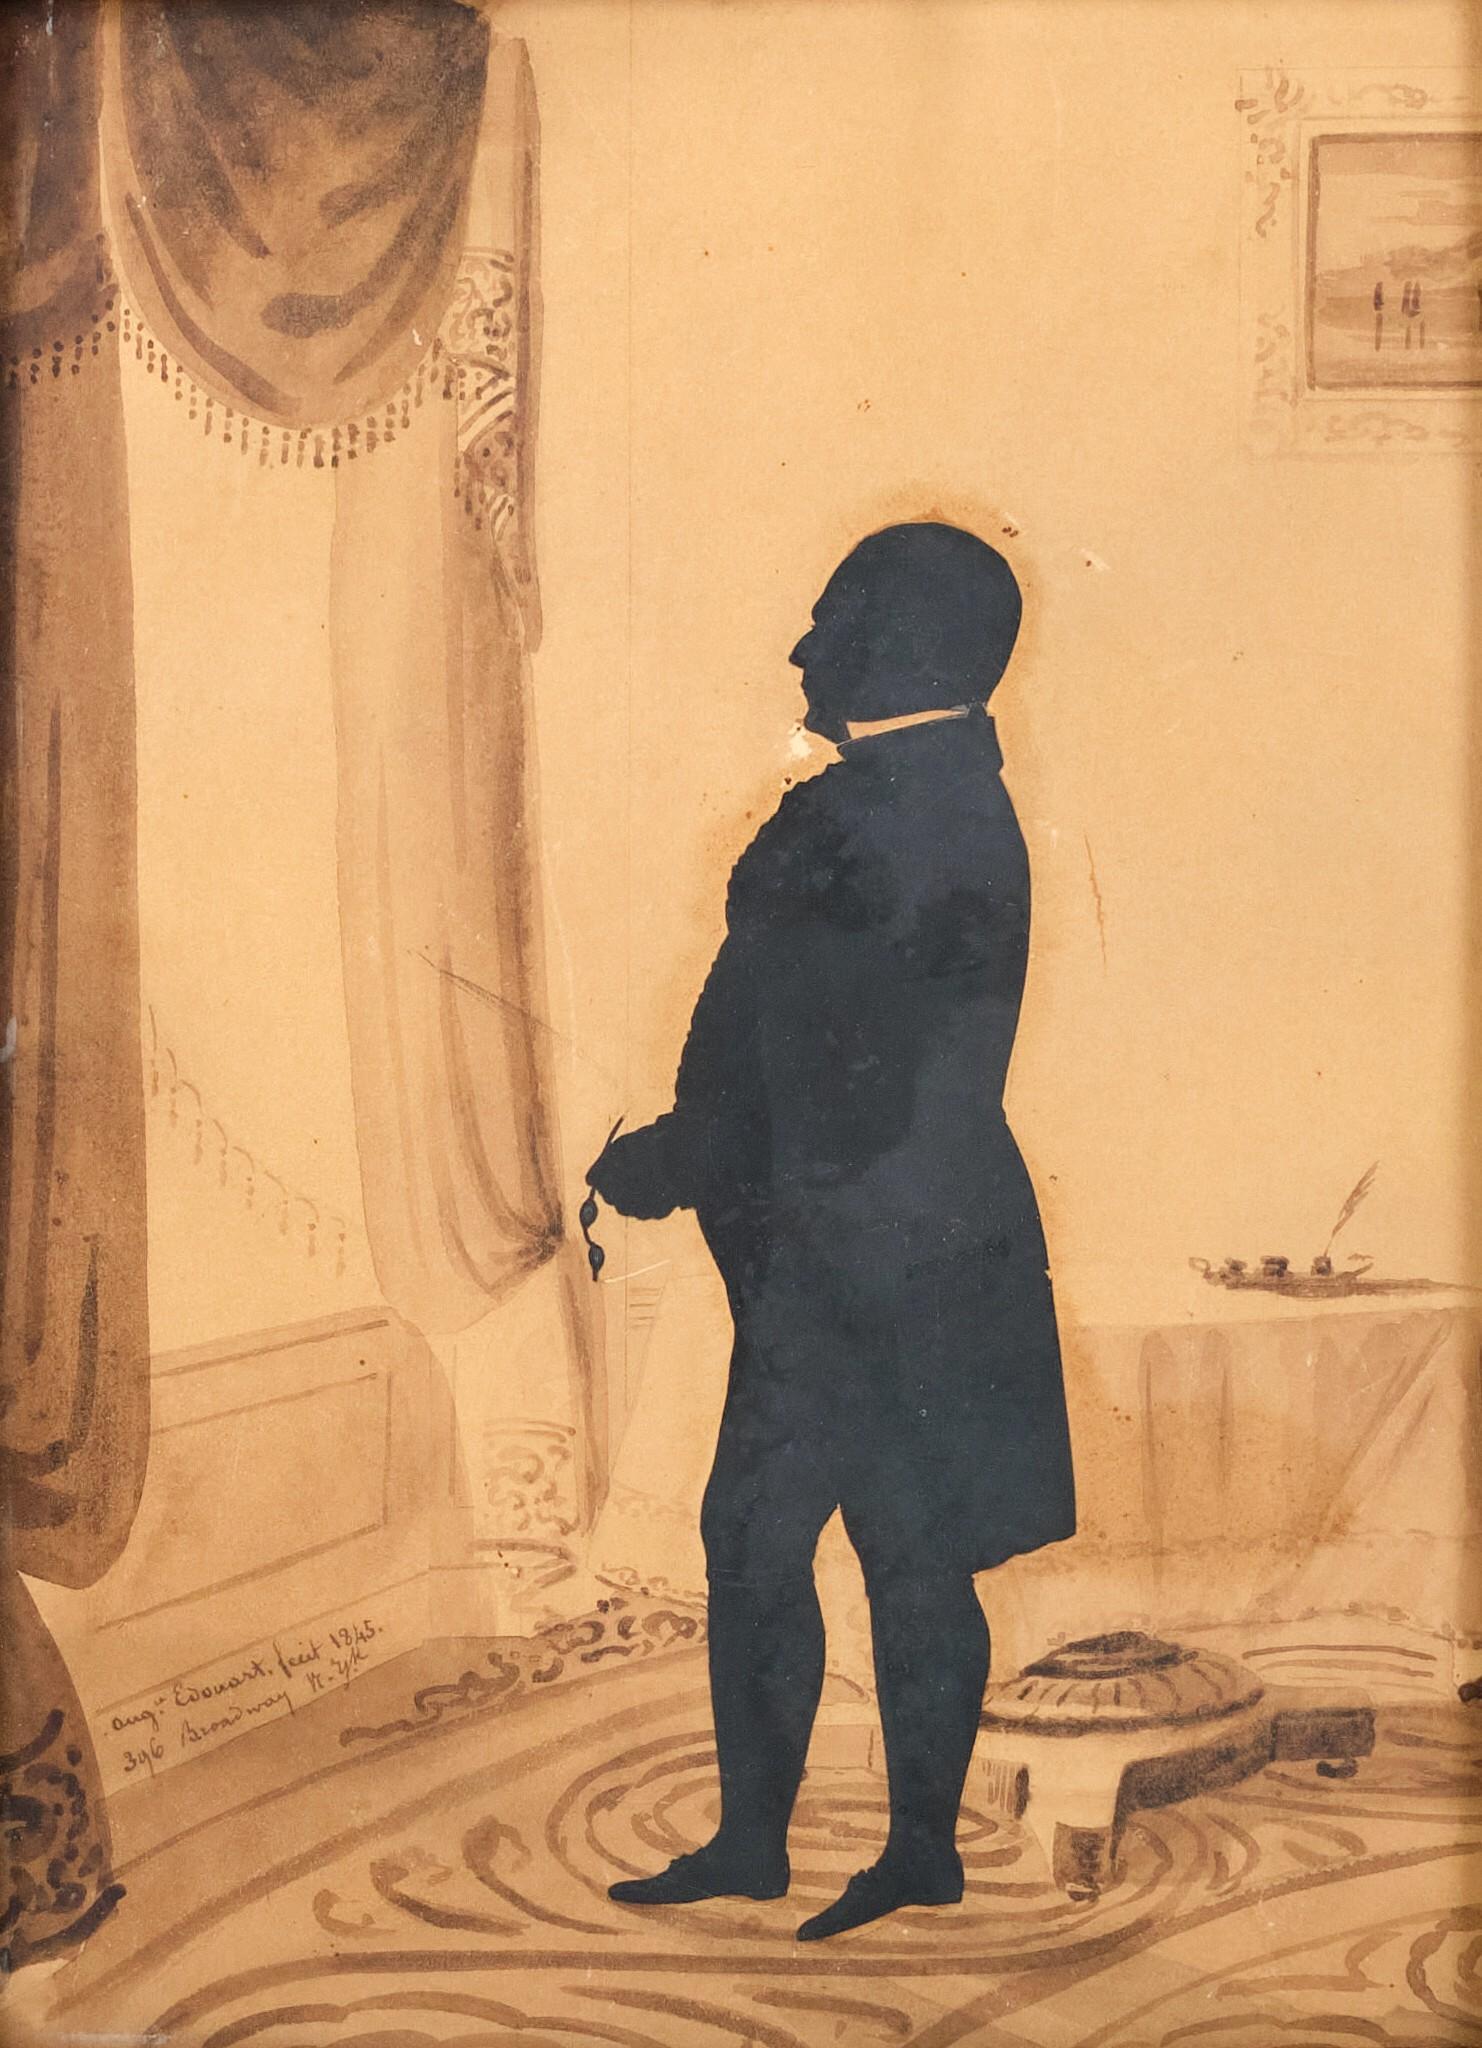 Eine sehr gute Scherenschnitt-Silhouette von Auguste Edouart aus dem 19. Jahrhundert, die einen prominenten New Yorker Gentleman mit Brille in der Hand darstellt, der aus einem teilweise handkolorierten Saloninterieur aus dem Fenster blickt. In